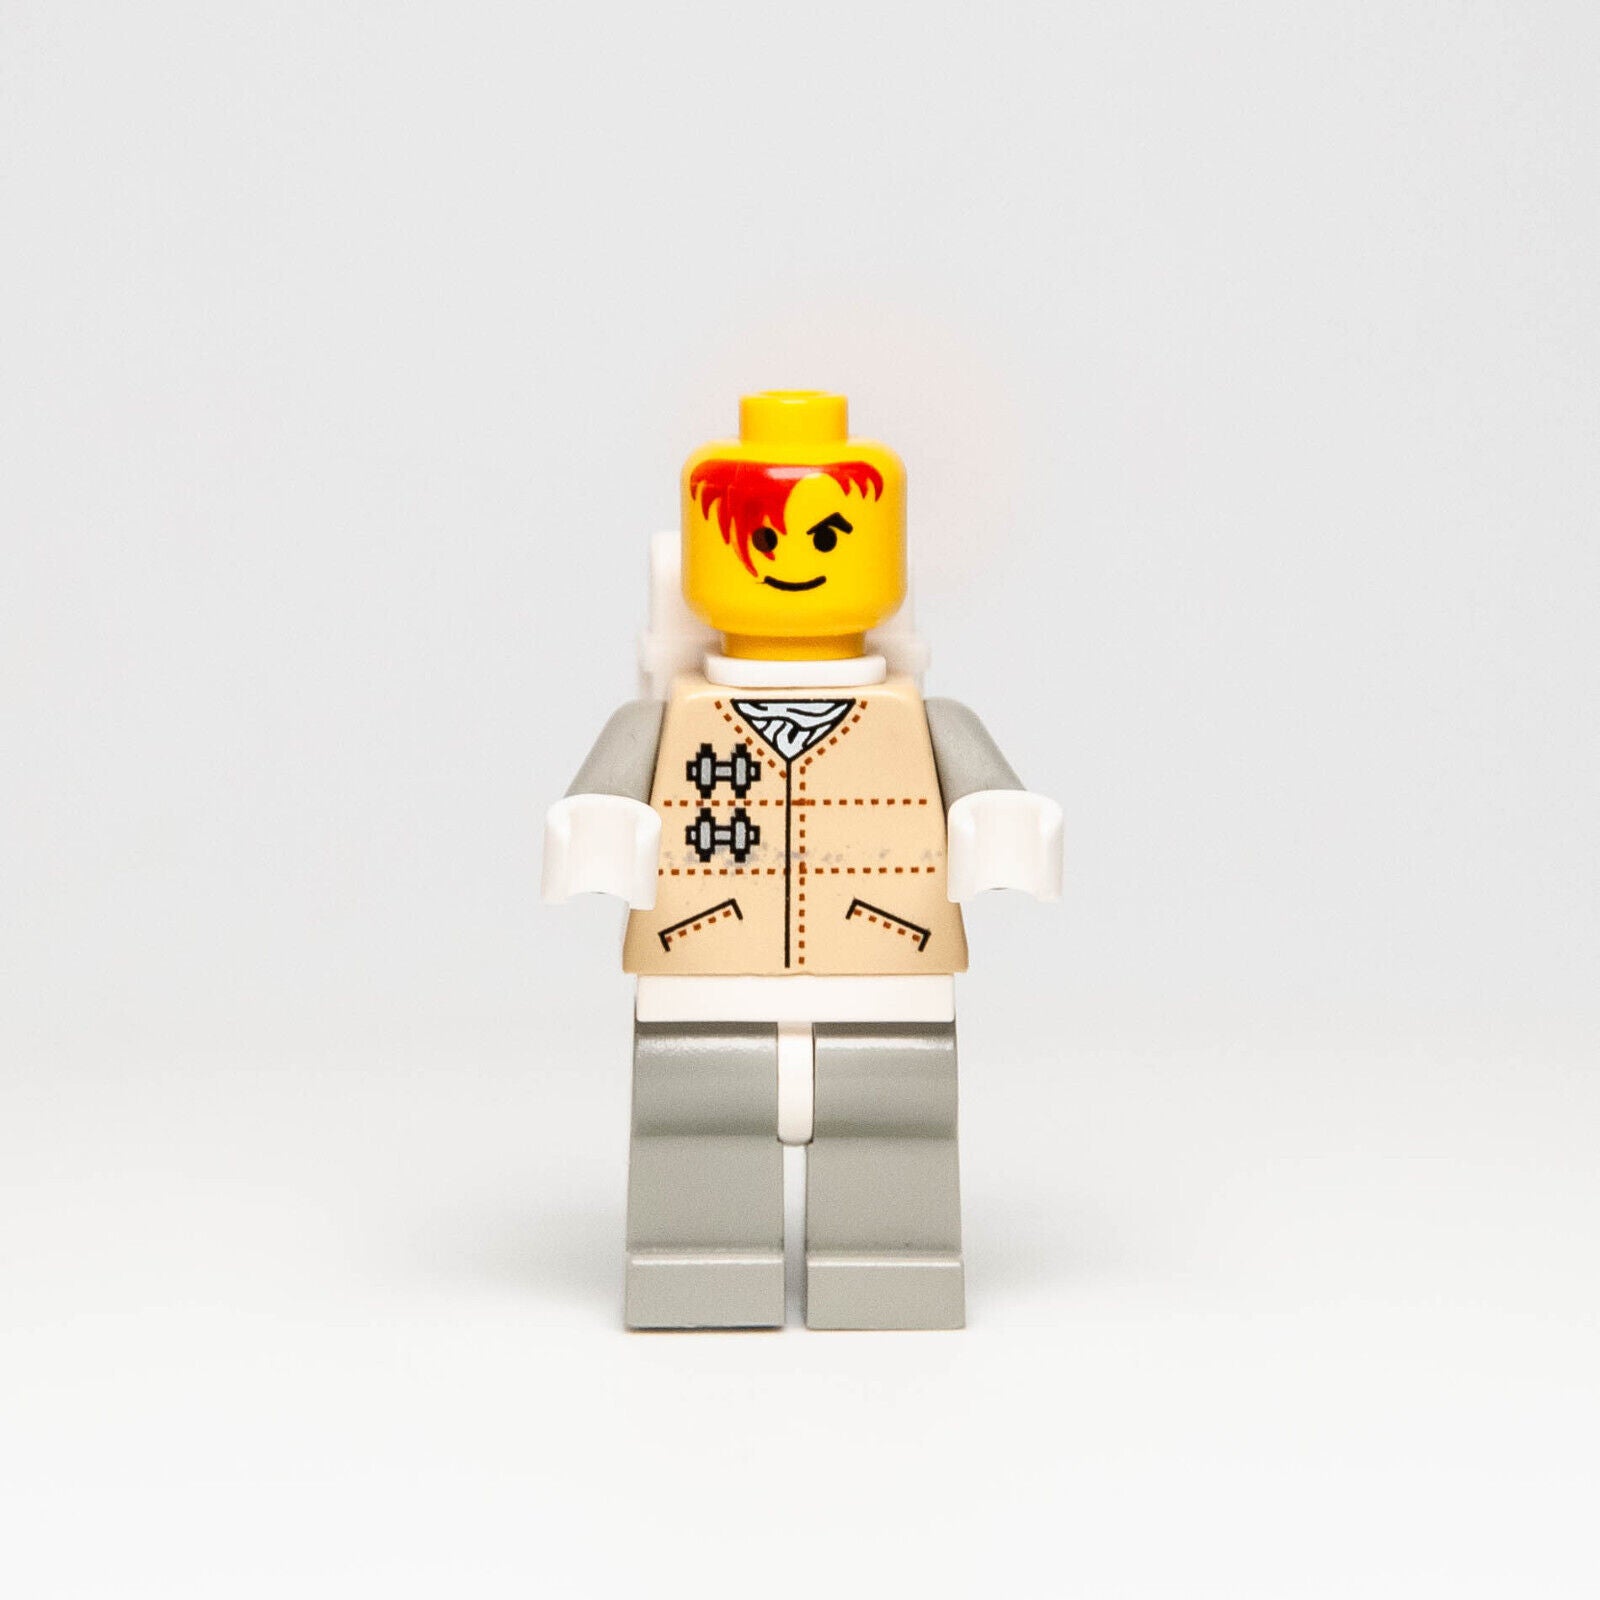 LEGO Star Wars 4/5/6 Minifigure: Hoth Rebel Brown Visor sw0016 7130 Snowspeeder